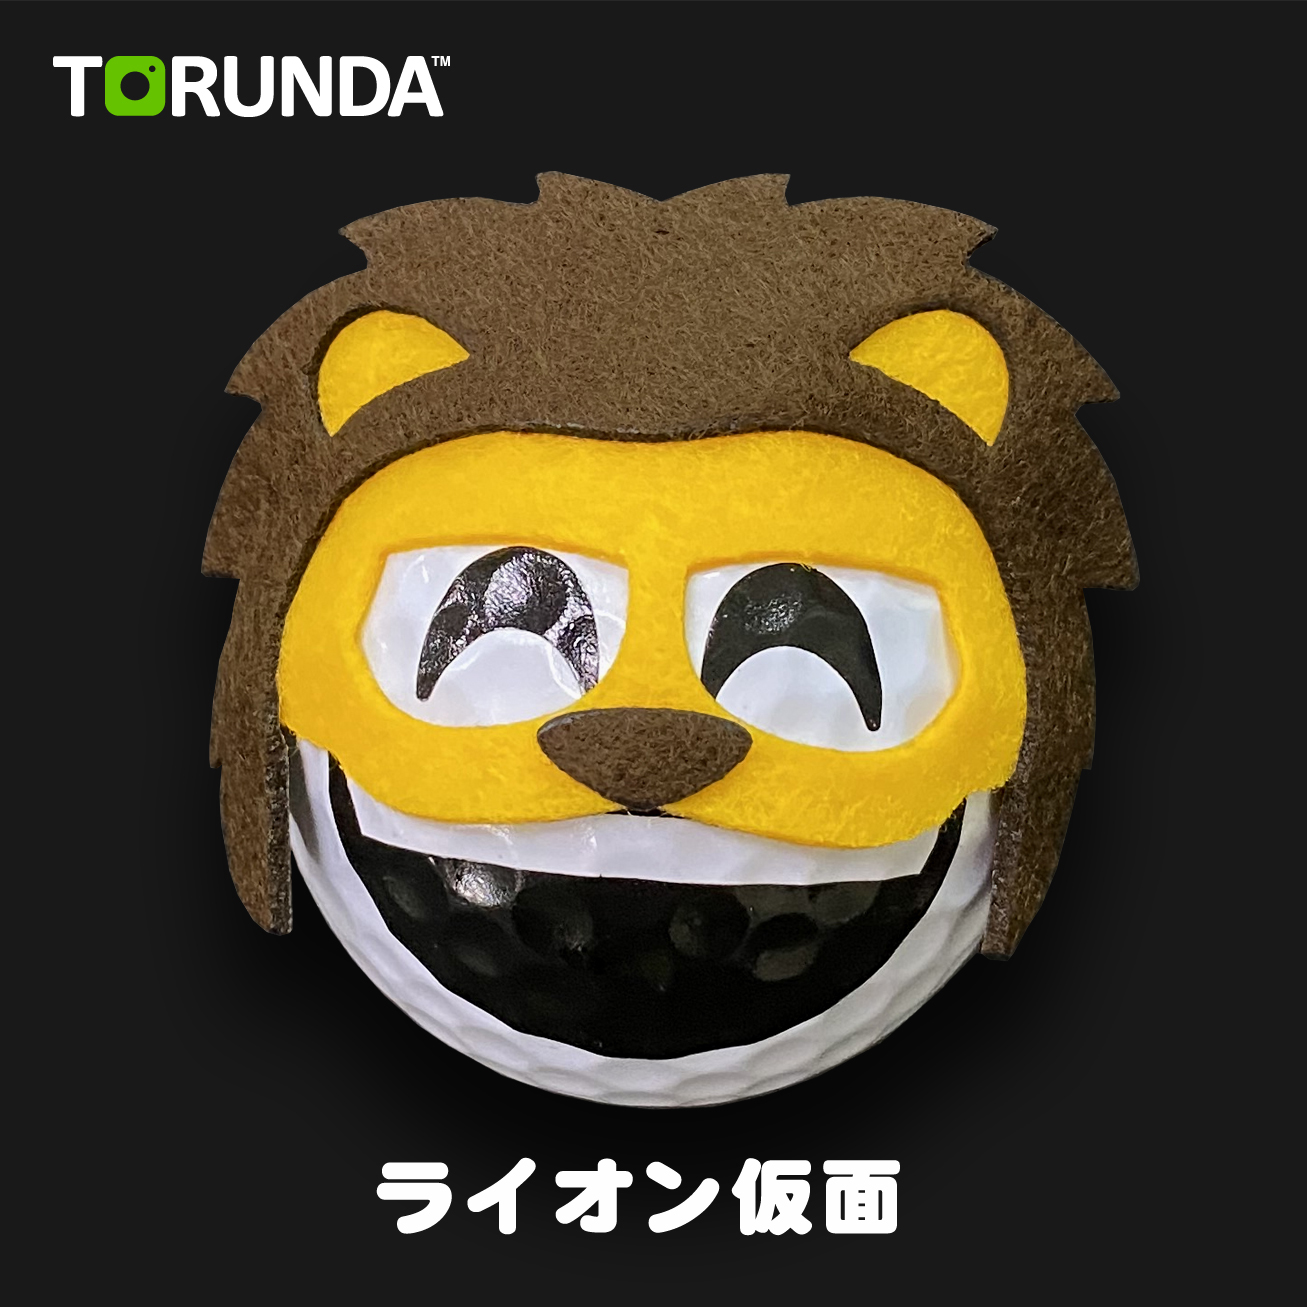 TORUNDA 撮るんだ かわいい 可愛い ゴルフボール用 ライオン仮面